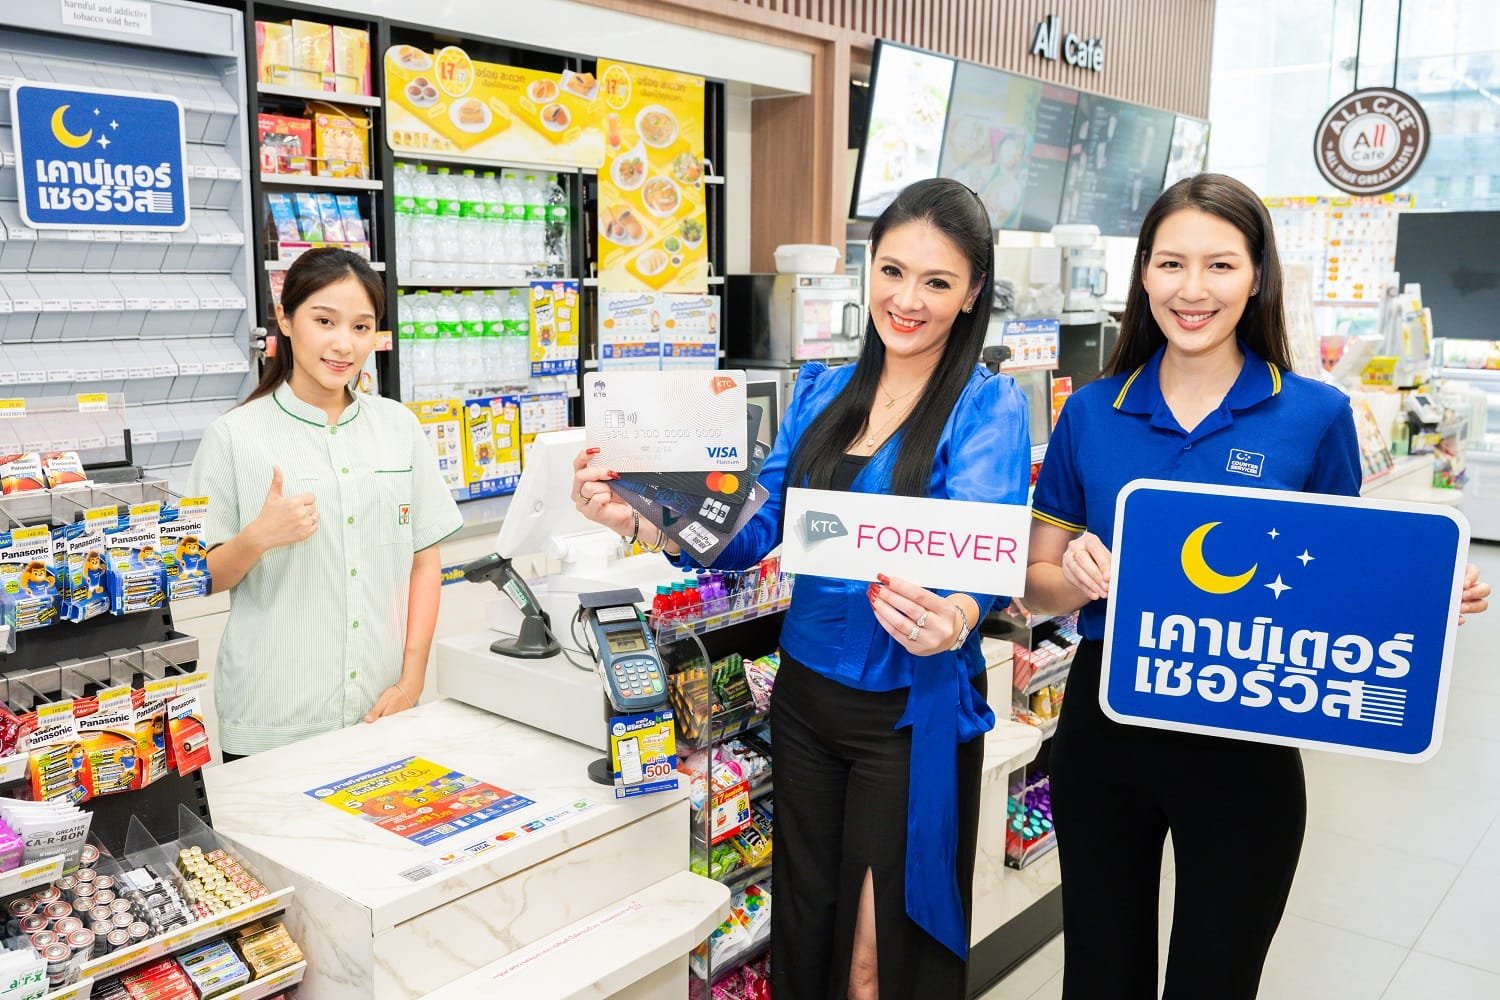 "เคทีซี" สร้างปรากฎการณ์ใหม่ในไทย ครั้งแรกกับการใช้คะแนนแทนเงินสดที่ 7-Eleven  สุดว้าว! ทุก 10 คะแนน แทนเงิน 1 บาท 